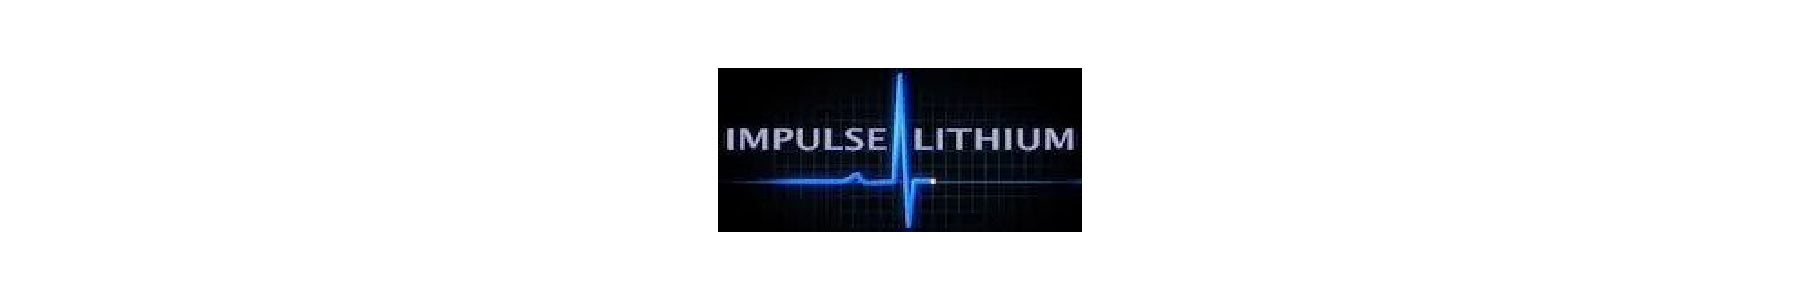 Impulse Lithium Warranty